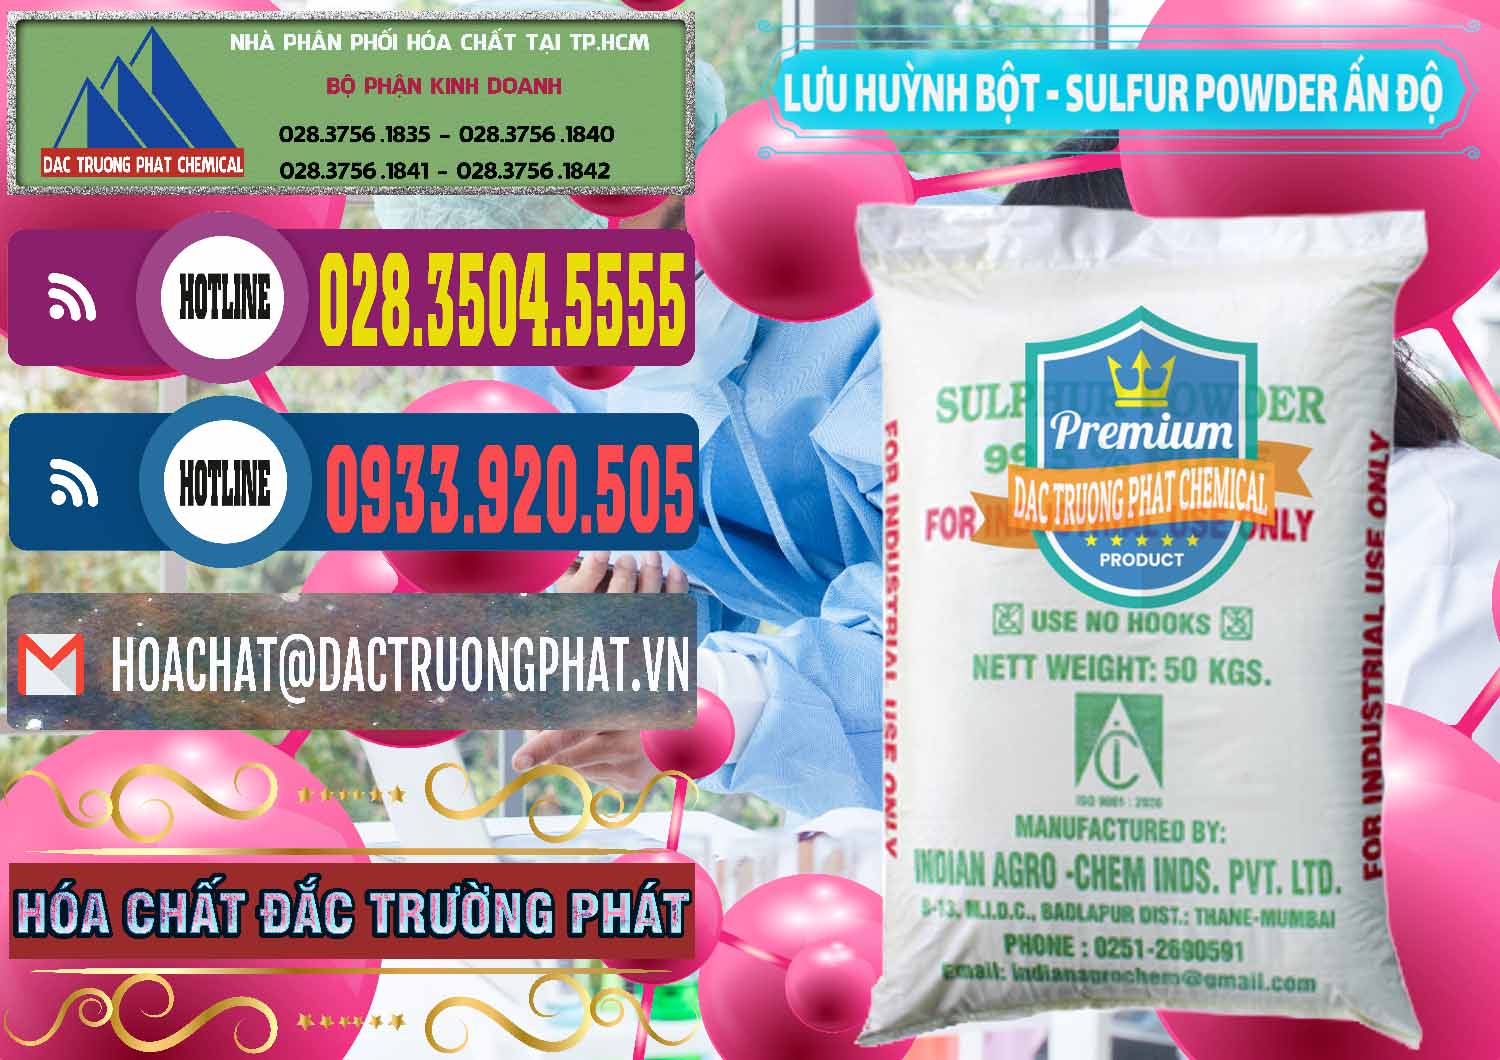 Nhà cung ứng _ bán Lưu huỳnh Bột - Sulfur Powder Ấn Độ India - 0347 - Công ty chuyên phân phối - nhập khẩu hóa chất tại TP.HCM - muabanhoachat.com.vn